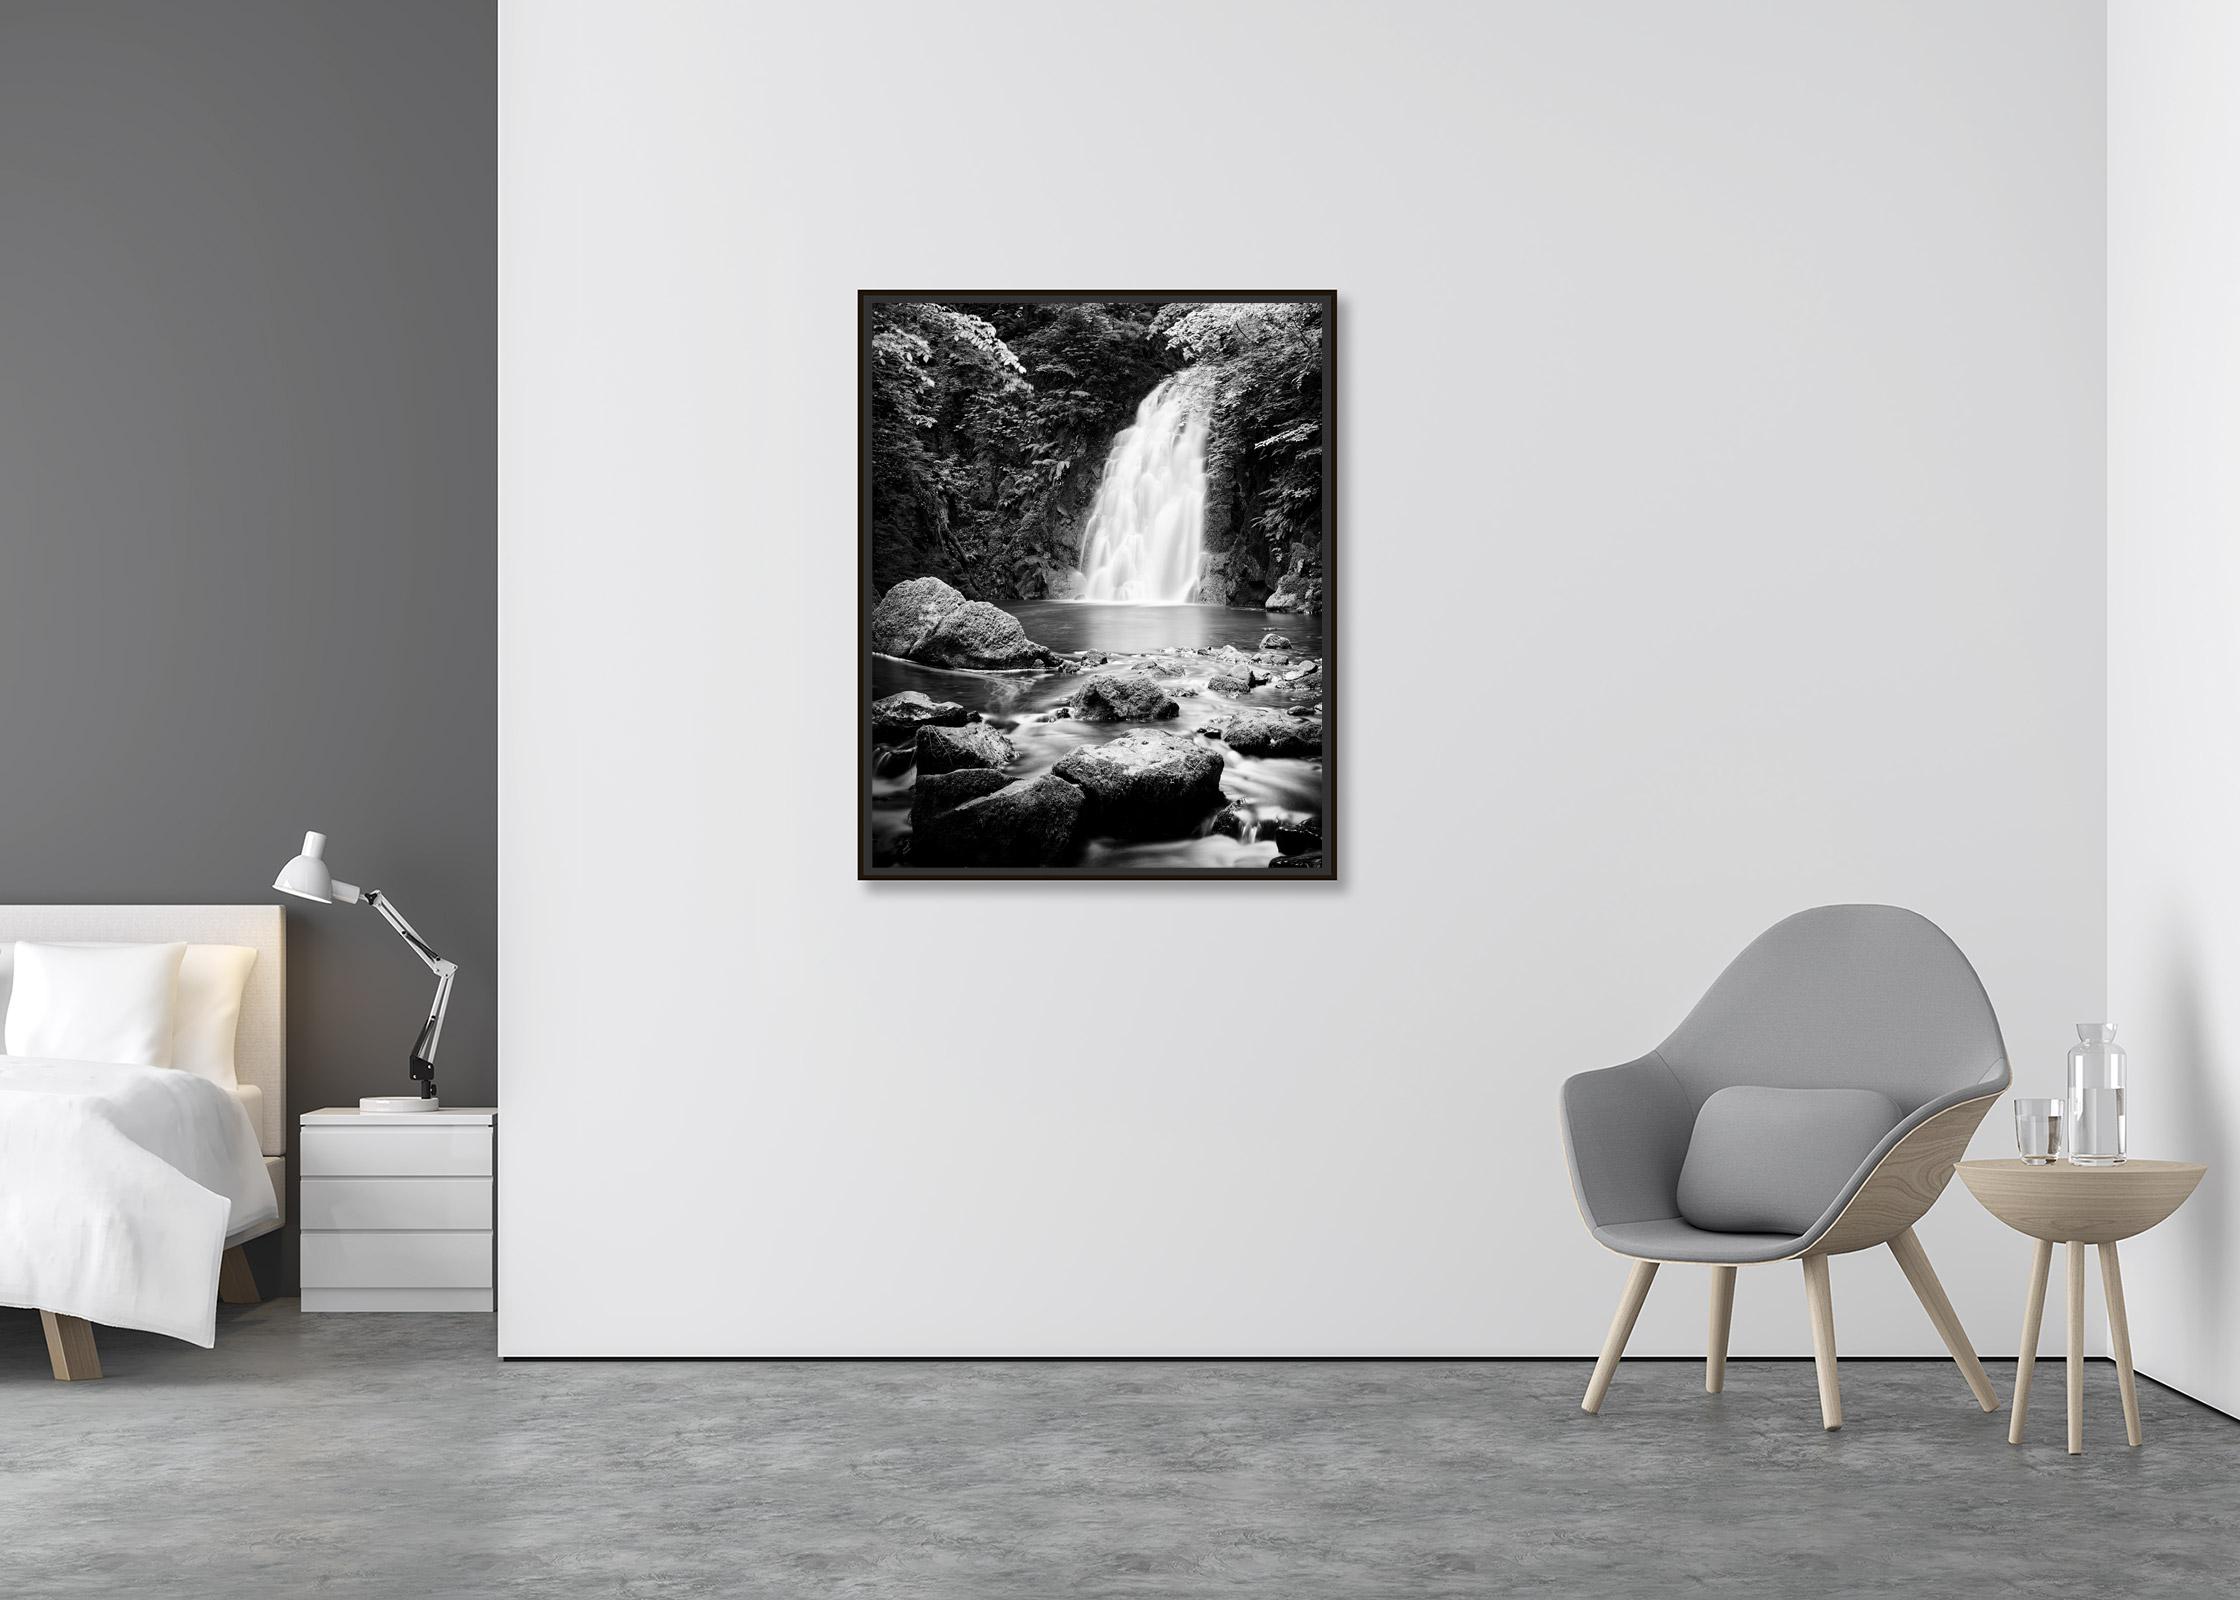 Glenoe Wasserfall Irland Schwarz-Weiß-Wasserlandschafts-Fotografie (Zeitgenössisch), Photograph, von Gerald Berghammer